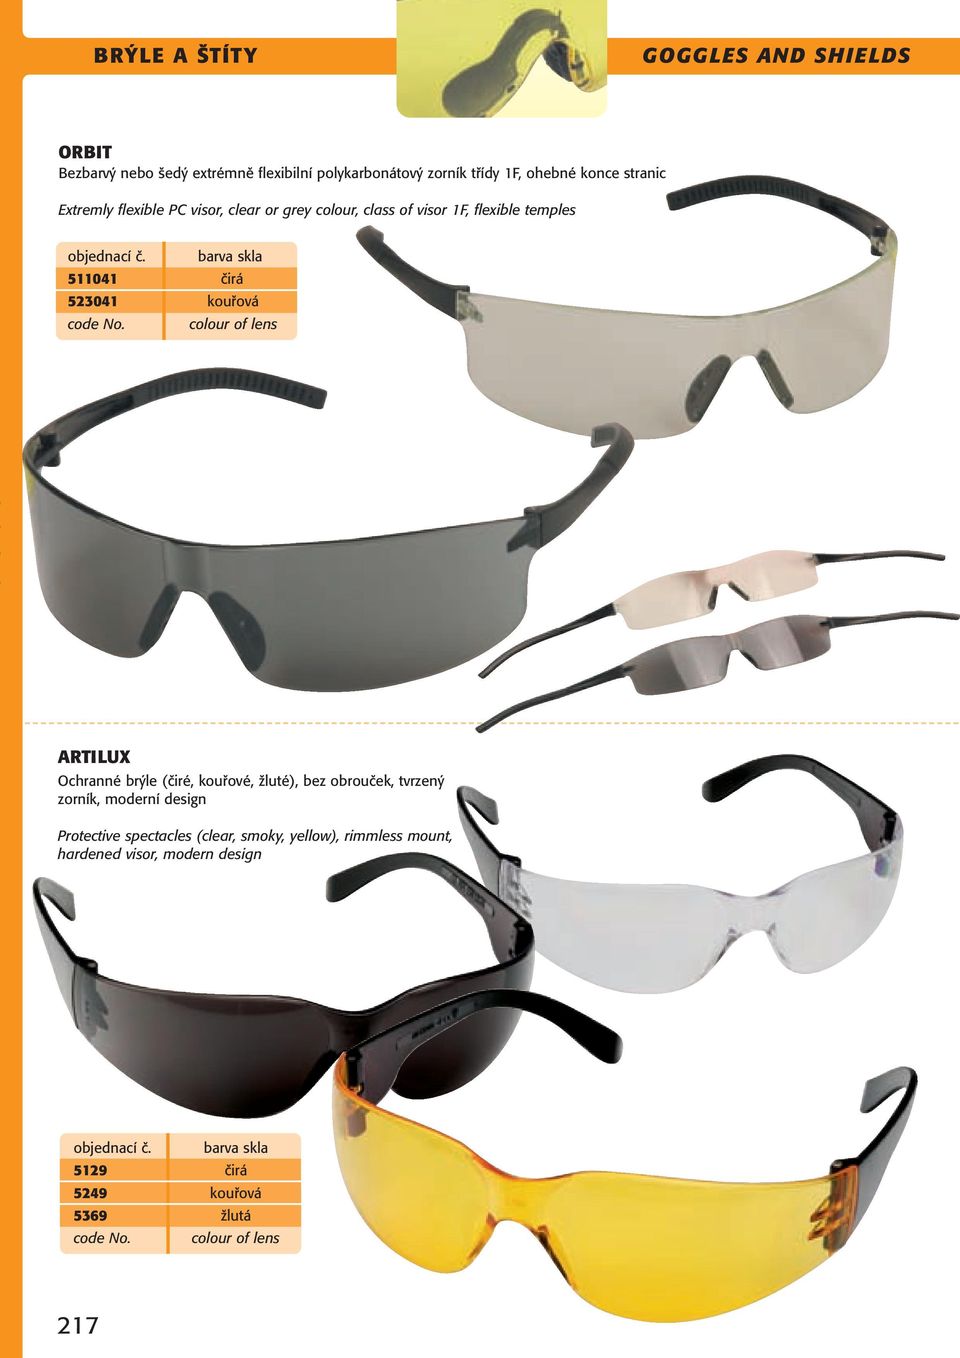 kouřová colour of lens ARTILUX Ochranné brýle (čiré, kouřové, žluté), bez obrouček, tvrzený zorník, moderní design Protective